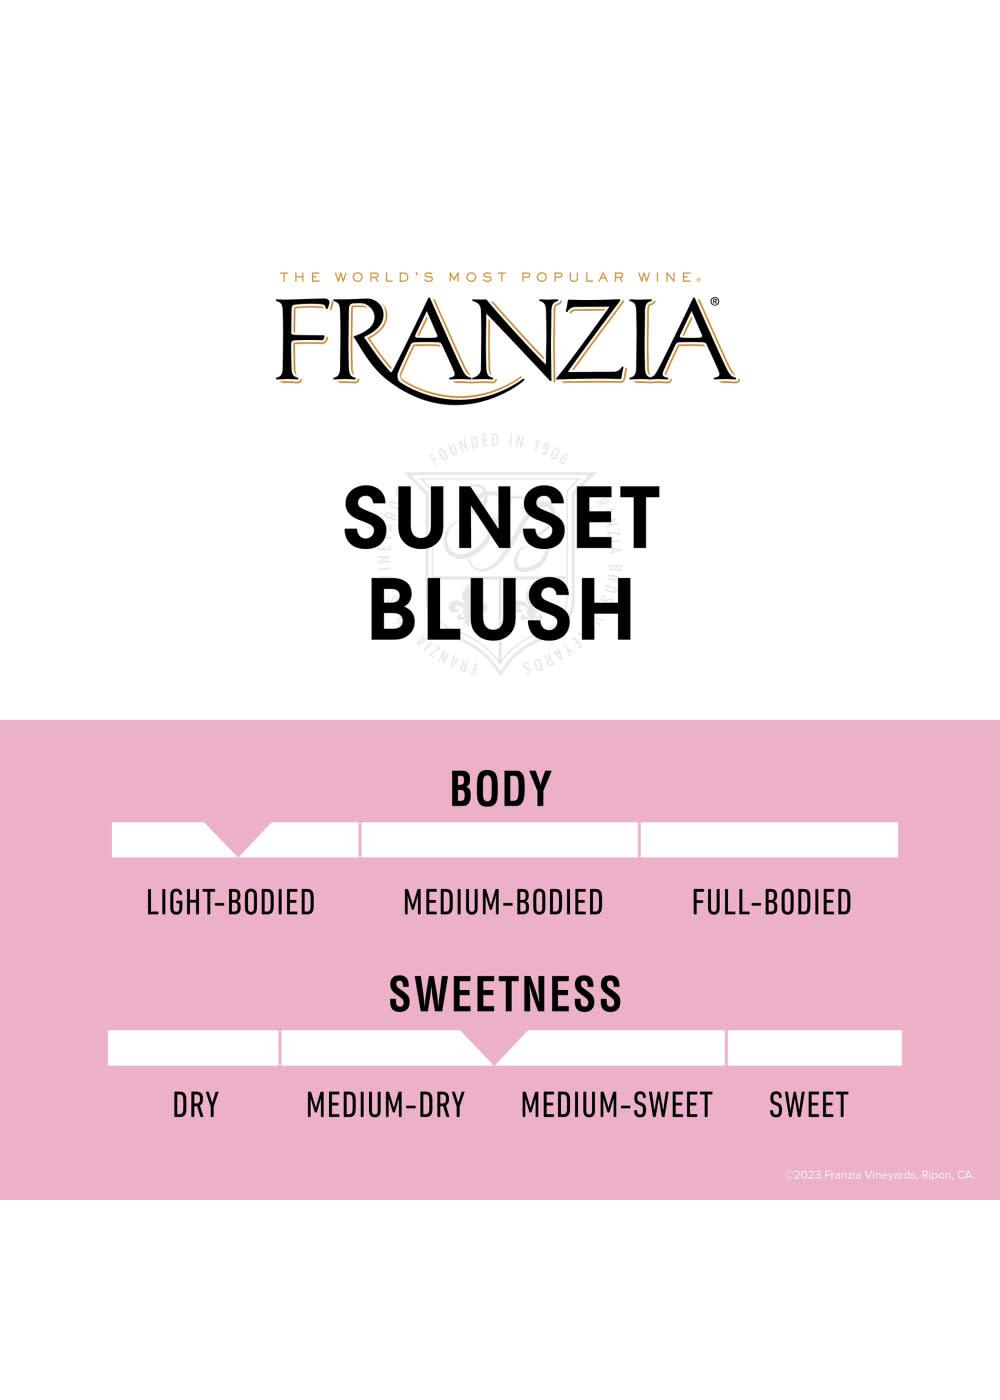 Franzia Sunset Blush Boxed Wine; image 7 of 7